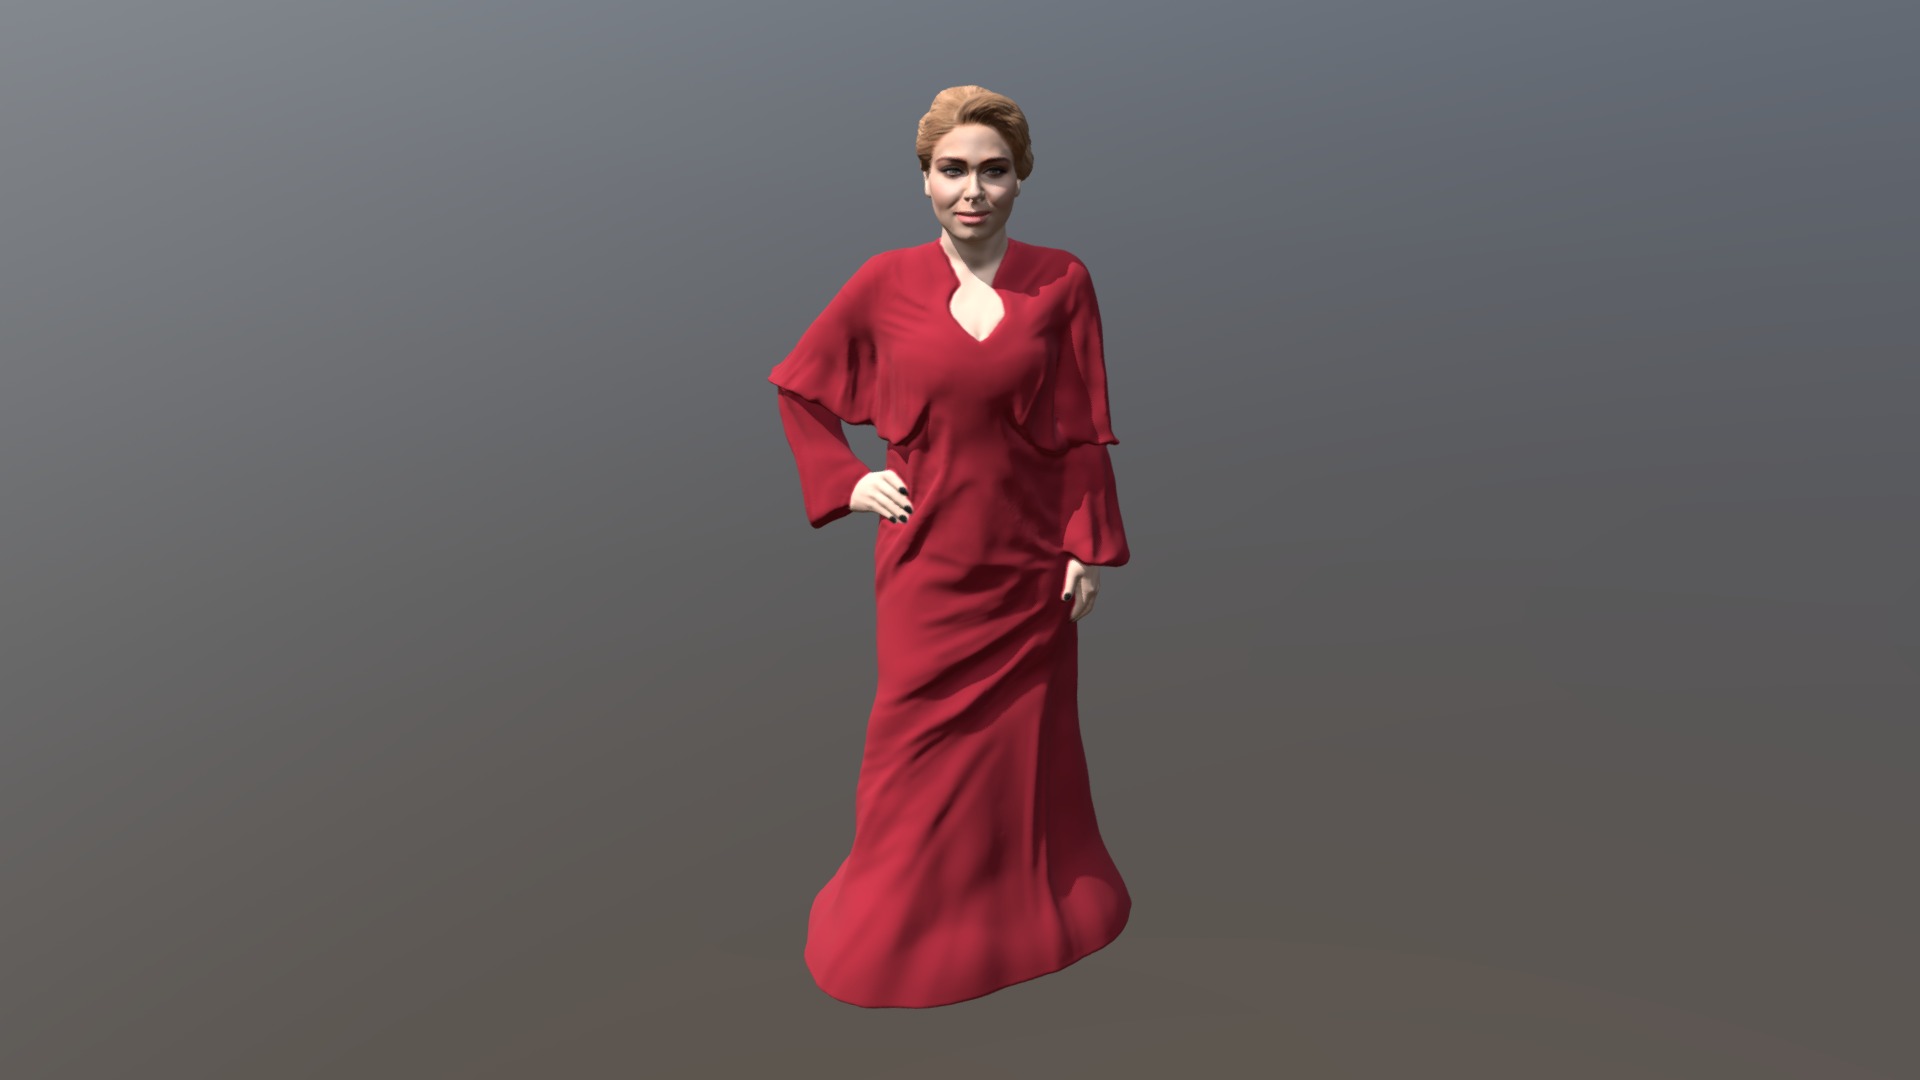 3D model Adele ready for full color 3D printing - This is a 3D model of the Adele ready for full color 3D printing. The 3D model is about a man in a red dress.